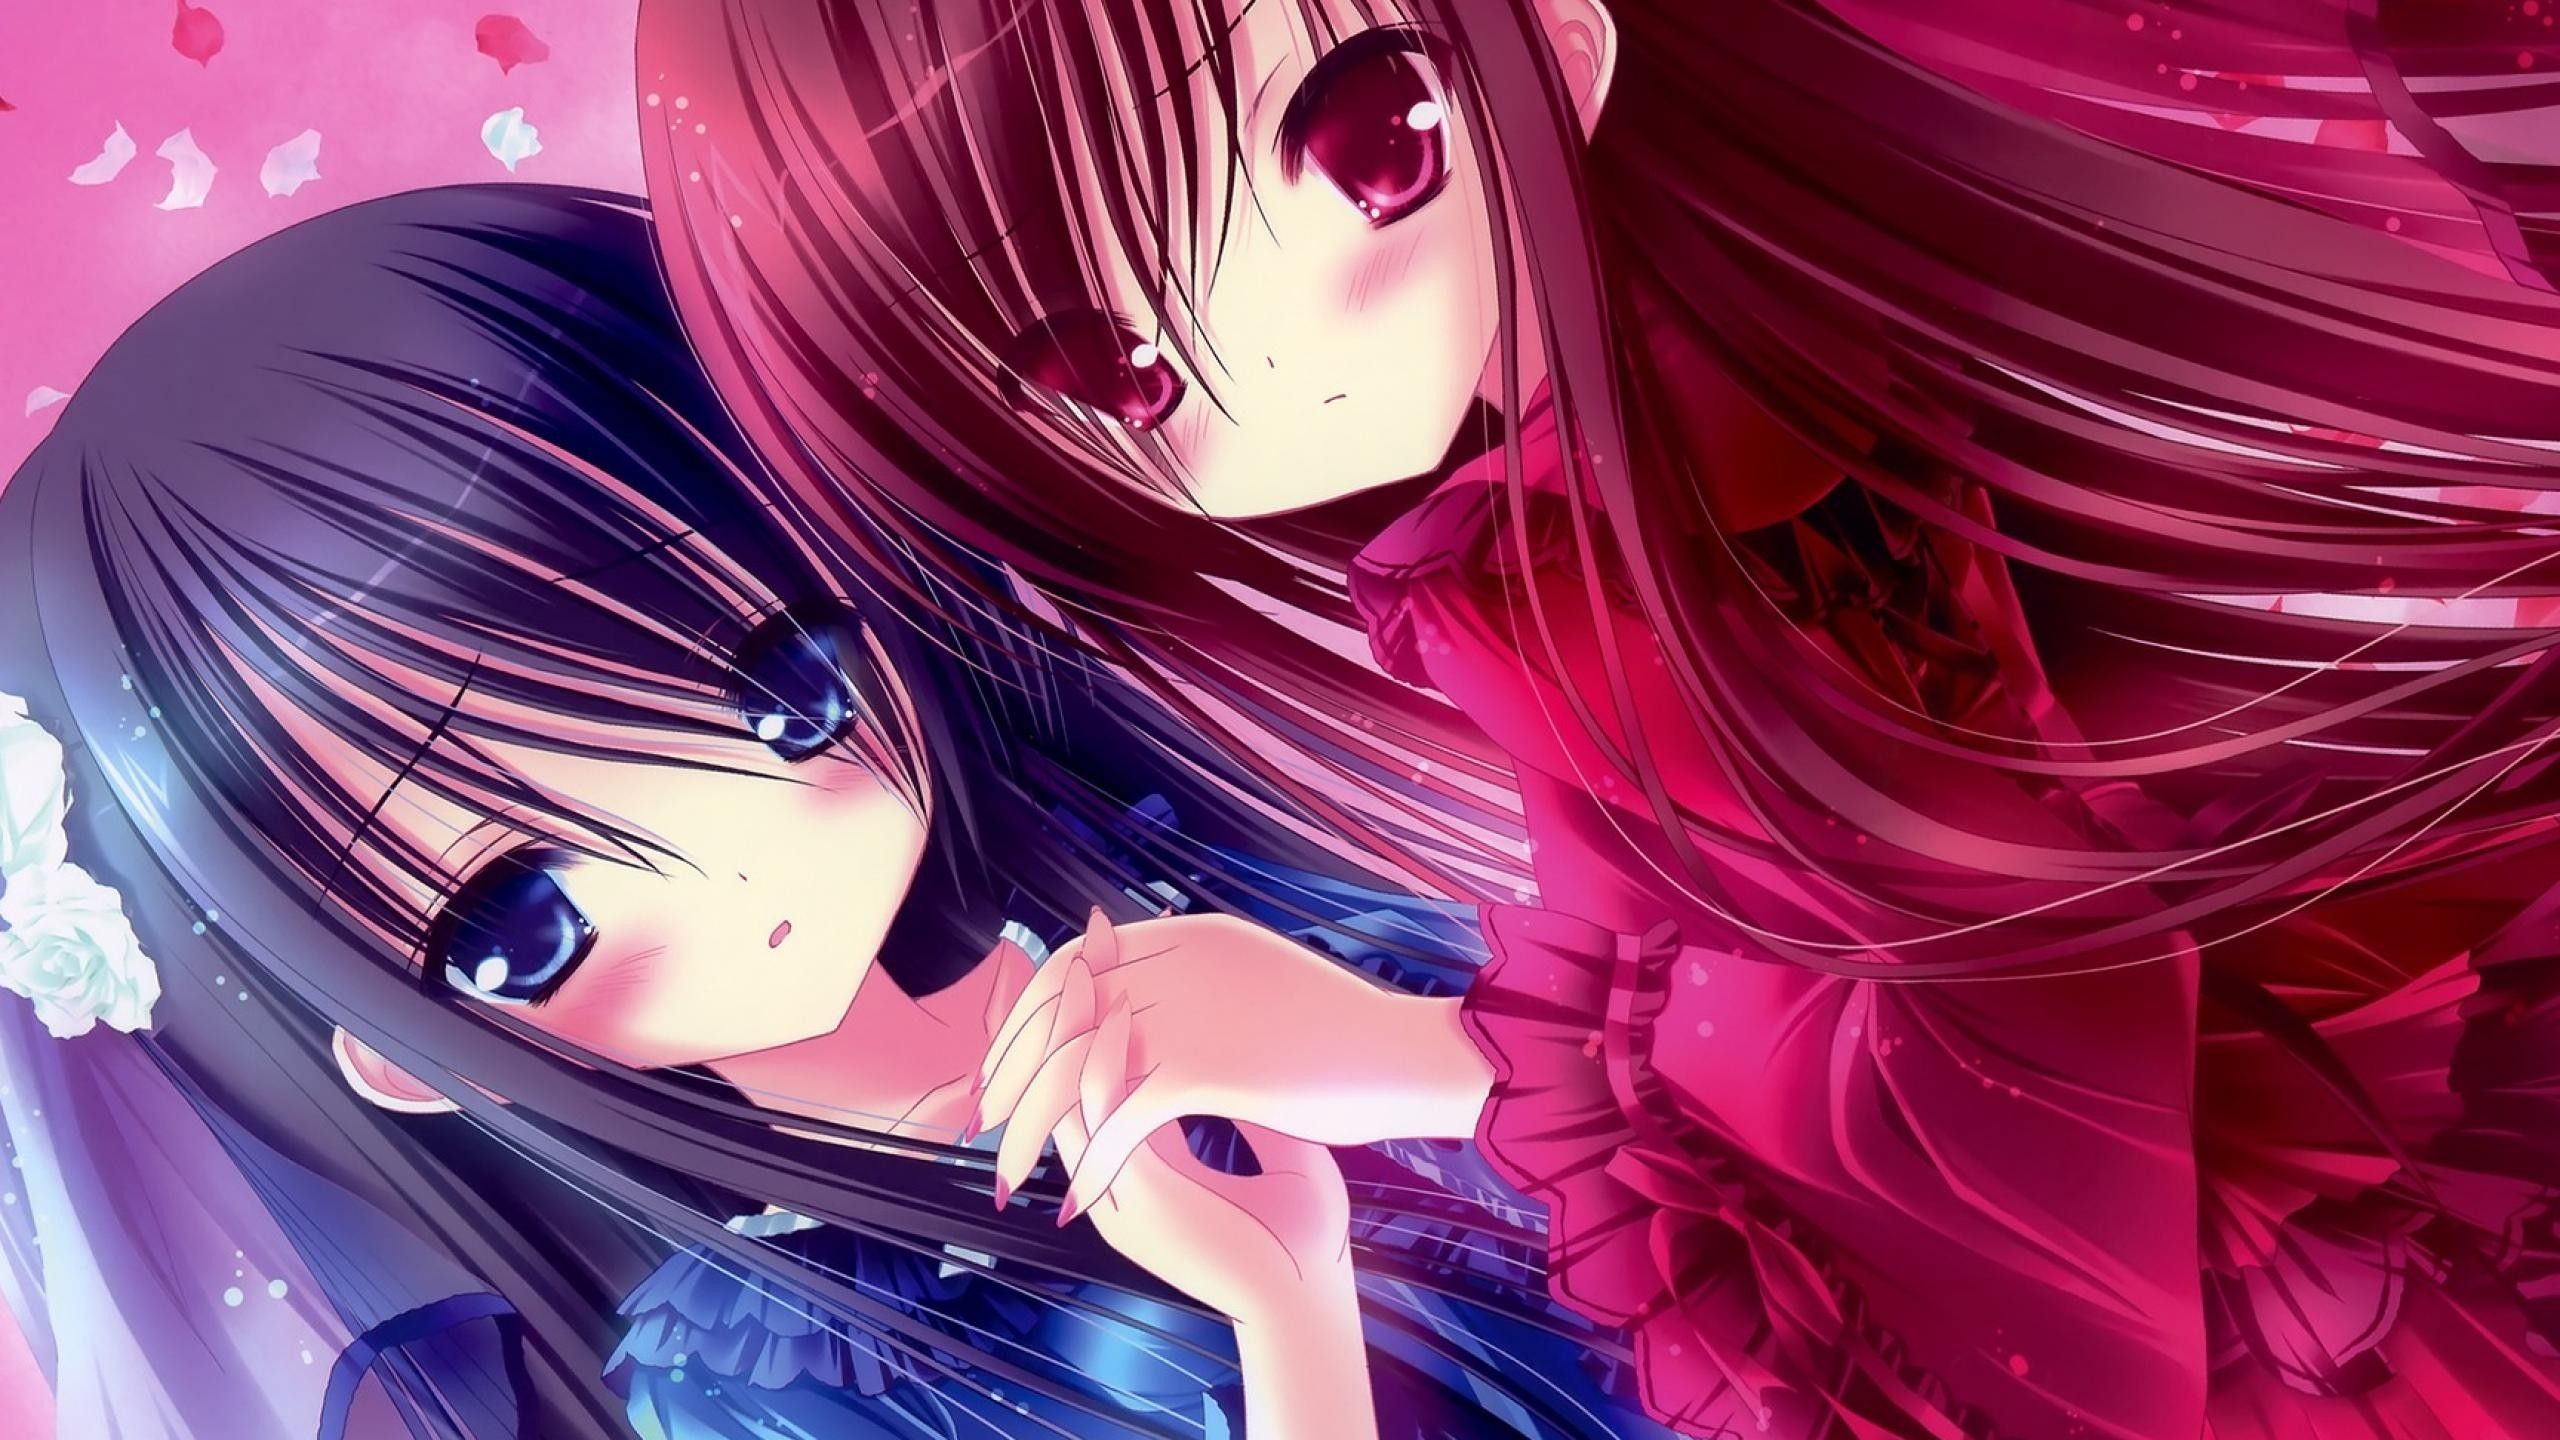 kawaii, anime, girl 1440P Resolution Wallpaper, HD Anime 4K Wallpaper, Image, Photo and Background